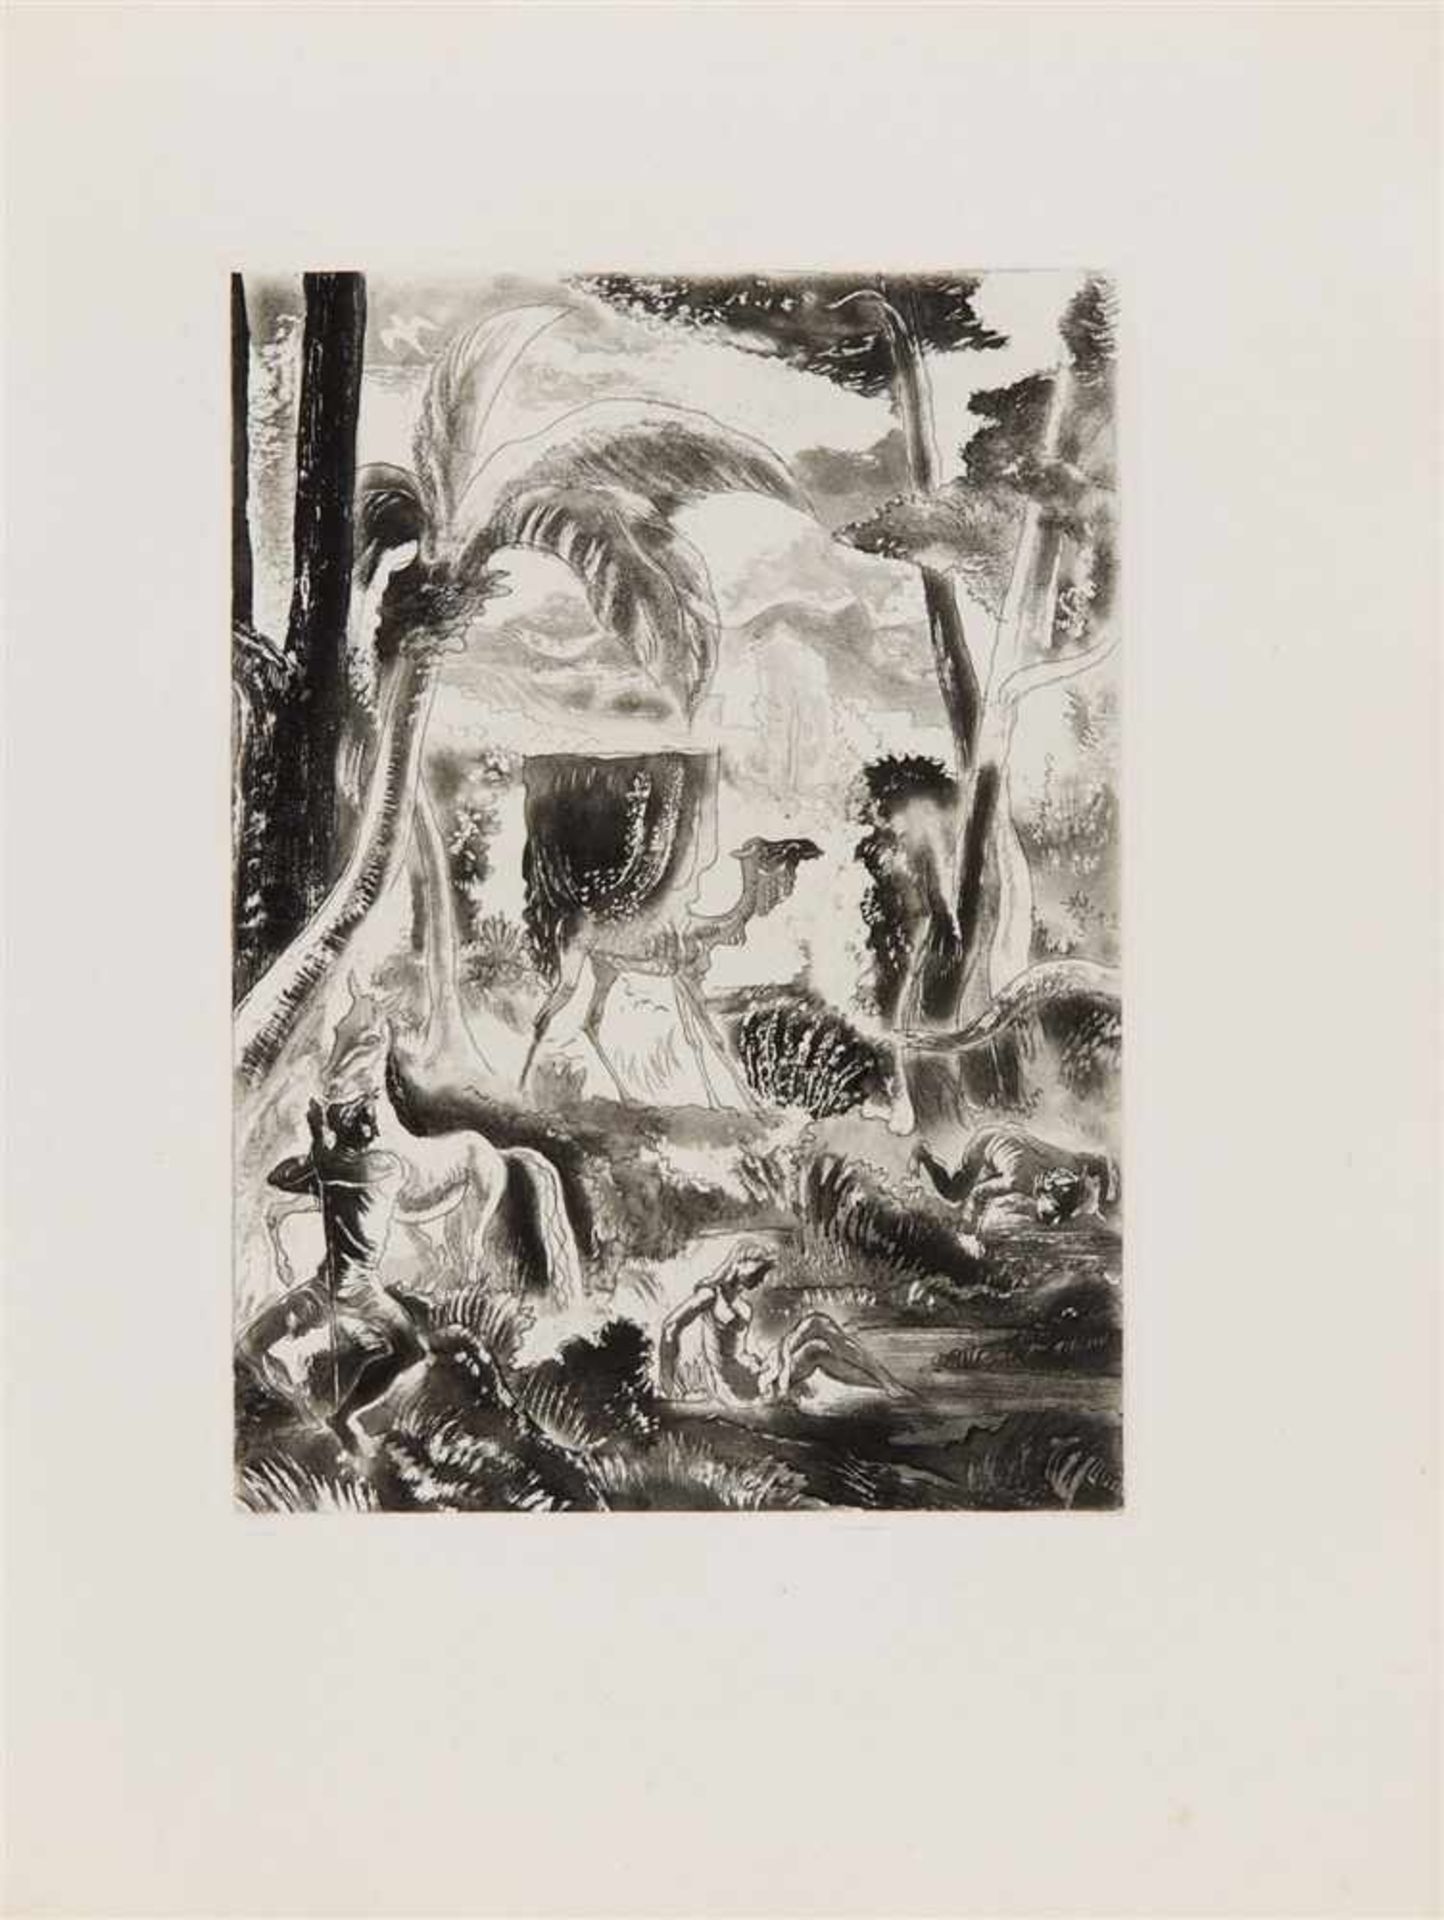 LEGRAND, EDY Le cantique des cantiques. Paris: Editions Orion (N. Matzneff) 1930. 33 x 25 cm. Mit 35